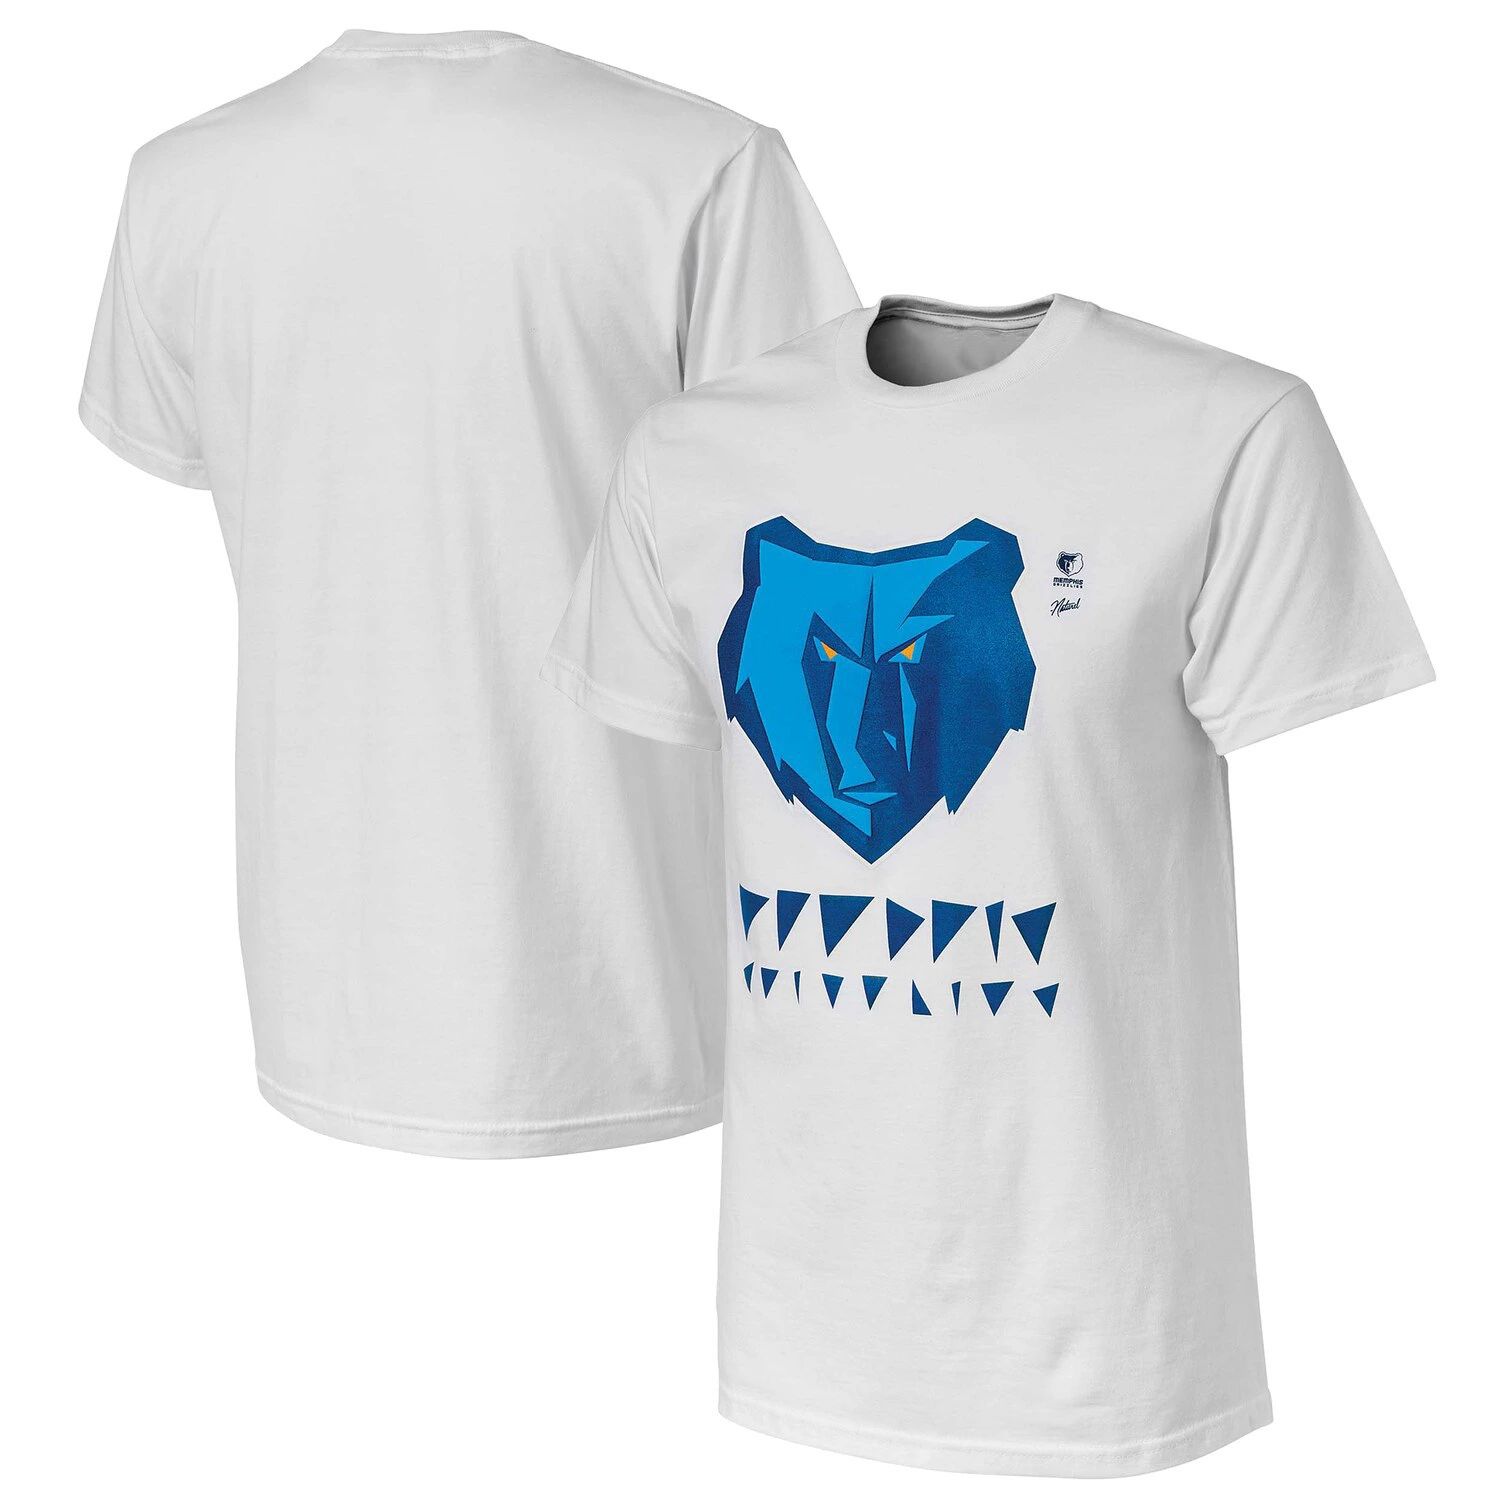 Мужская футболка NBA x Naturel White Memphis Grizzlies без идентификатора вызывающего абонента